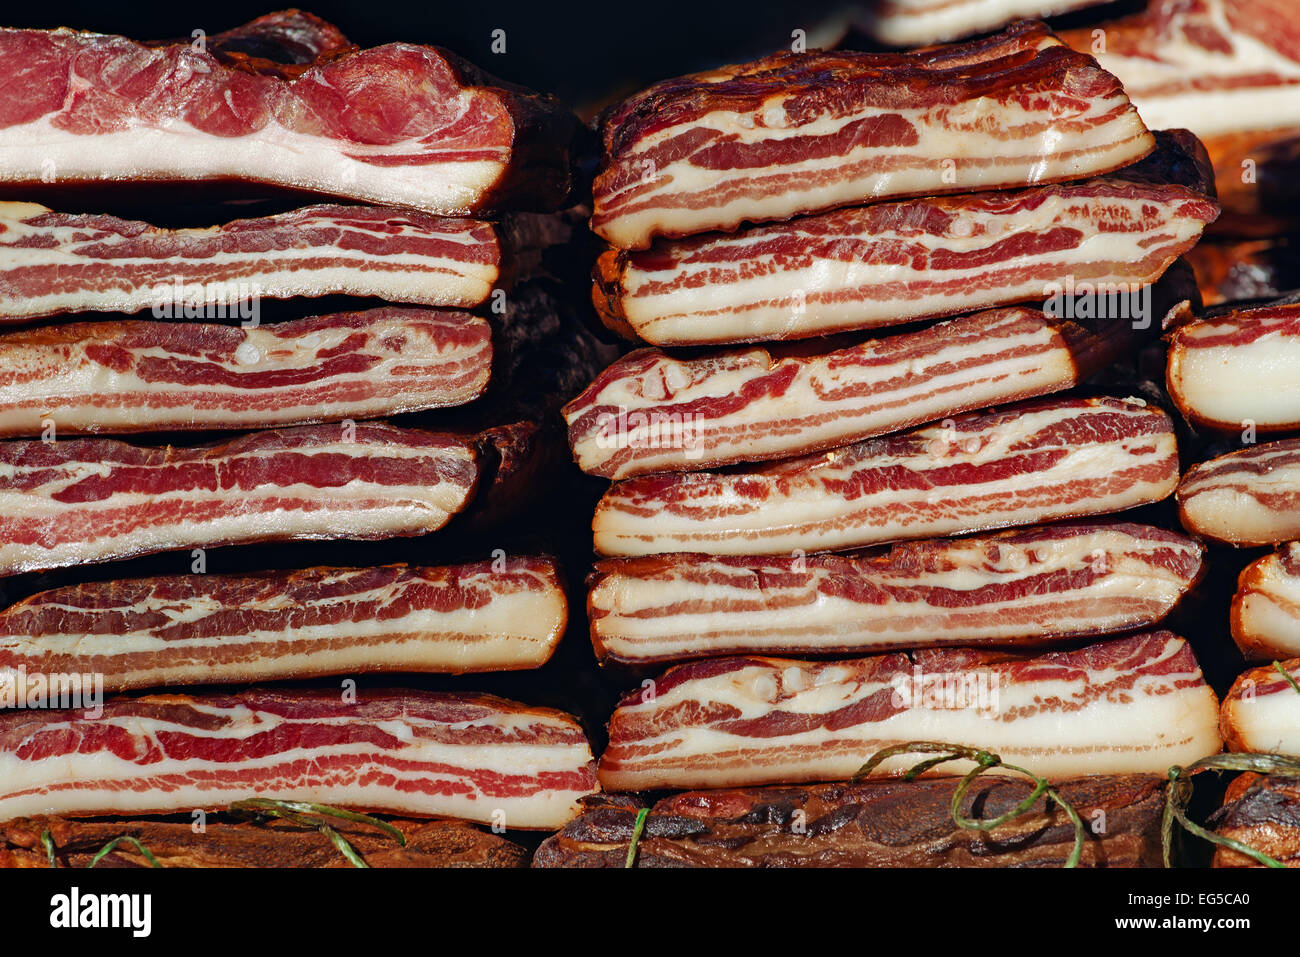 Ausgehärteten Speck Stack, geräuchert und bewahrt Schweinefleisch gilt als eine Delikatesse Essen in einigen Kulturen. Stockfoto